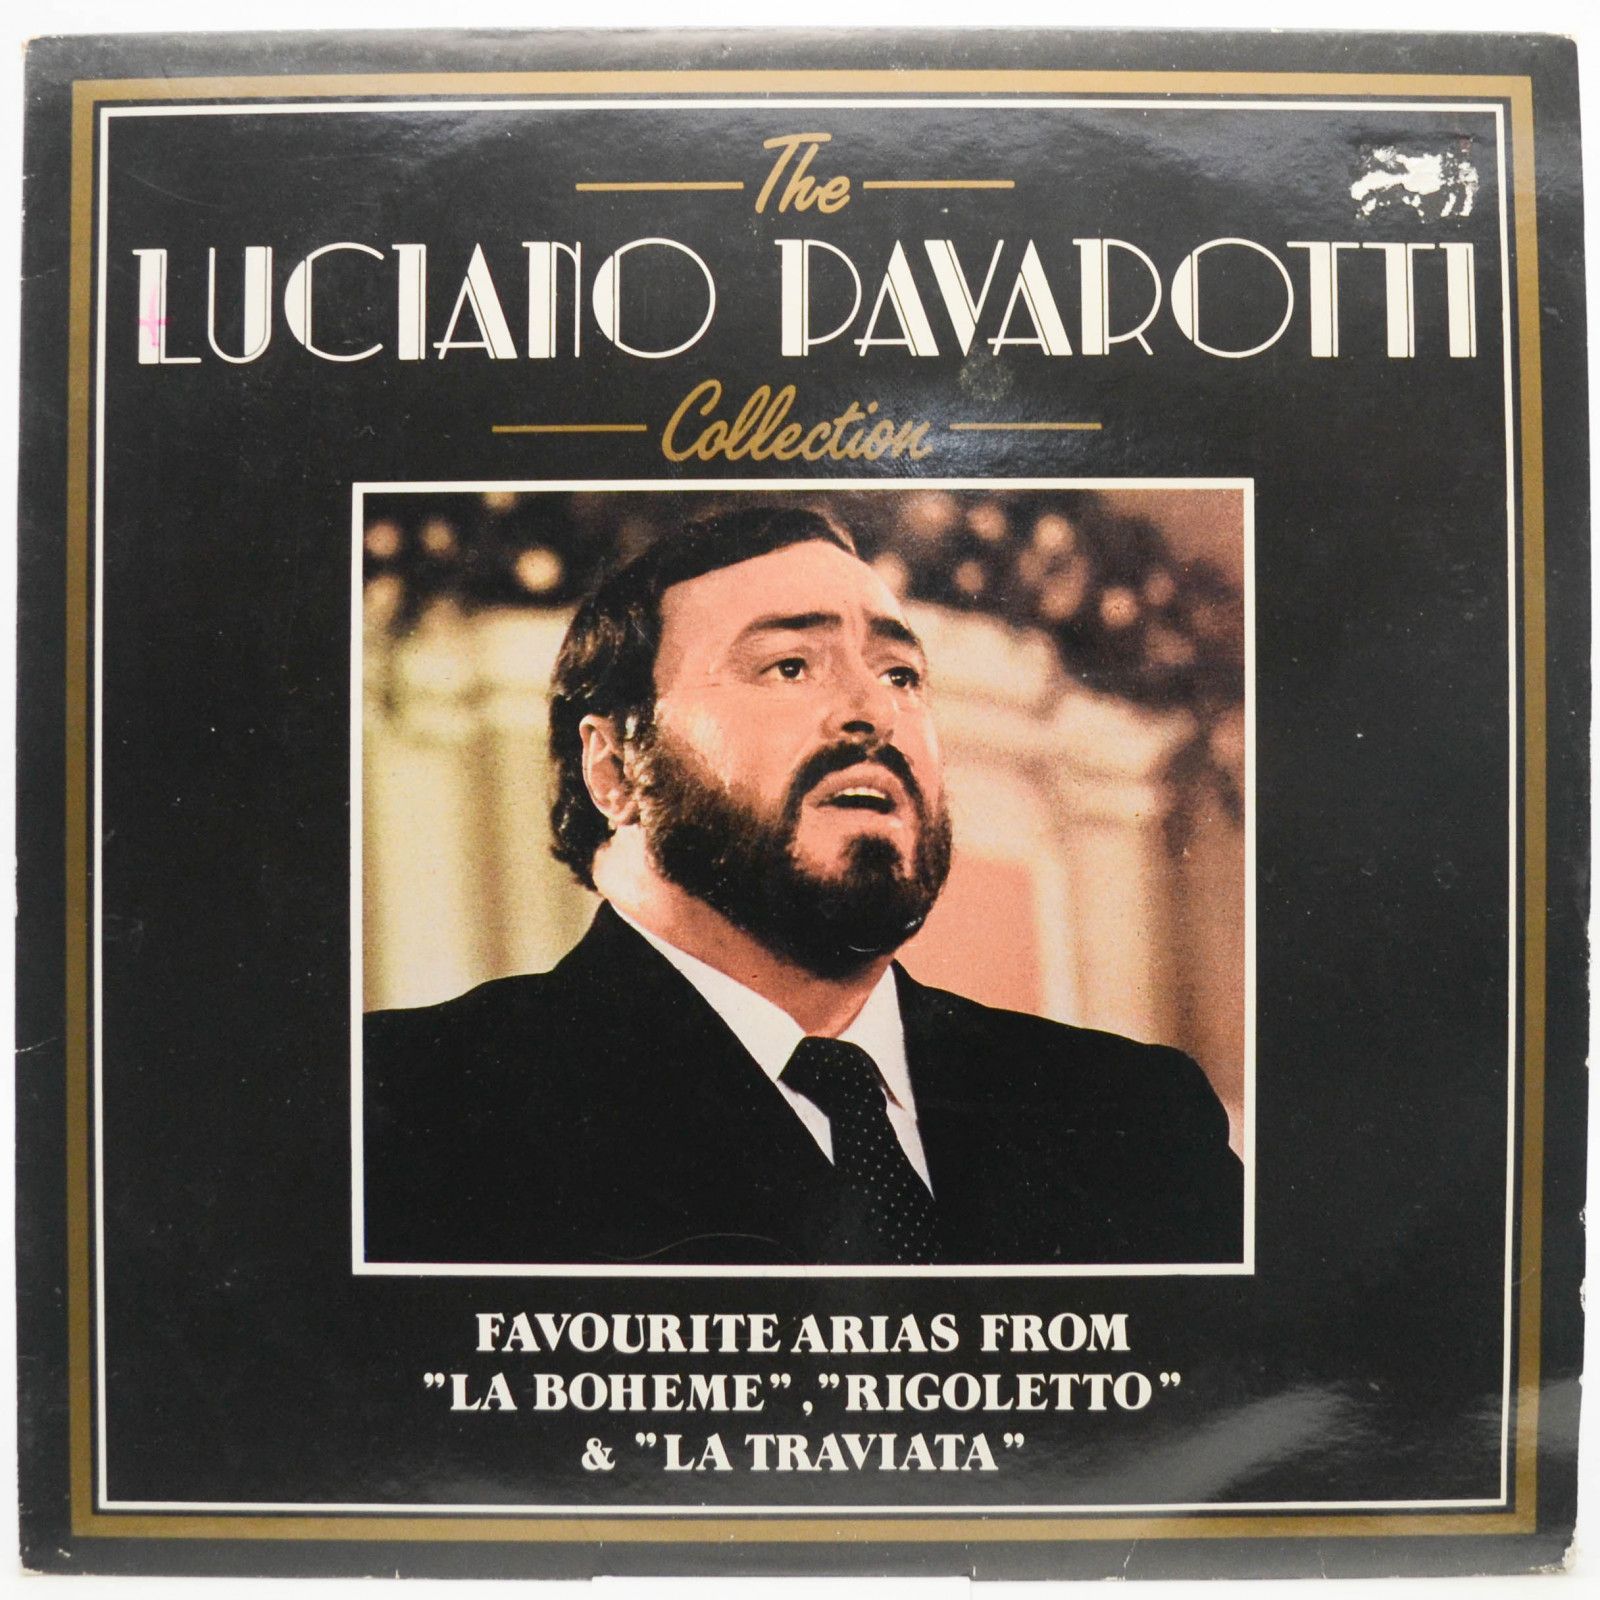 Luciano Pavarotti — The Luciano Pavarotti Collection - Favourite Arias From "La Boheme", "Rigoletto" & "La Traviata" (Italy), 1987